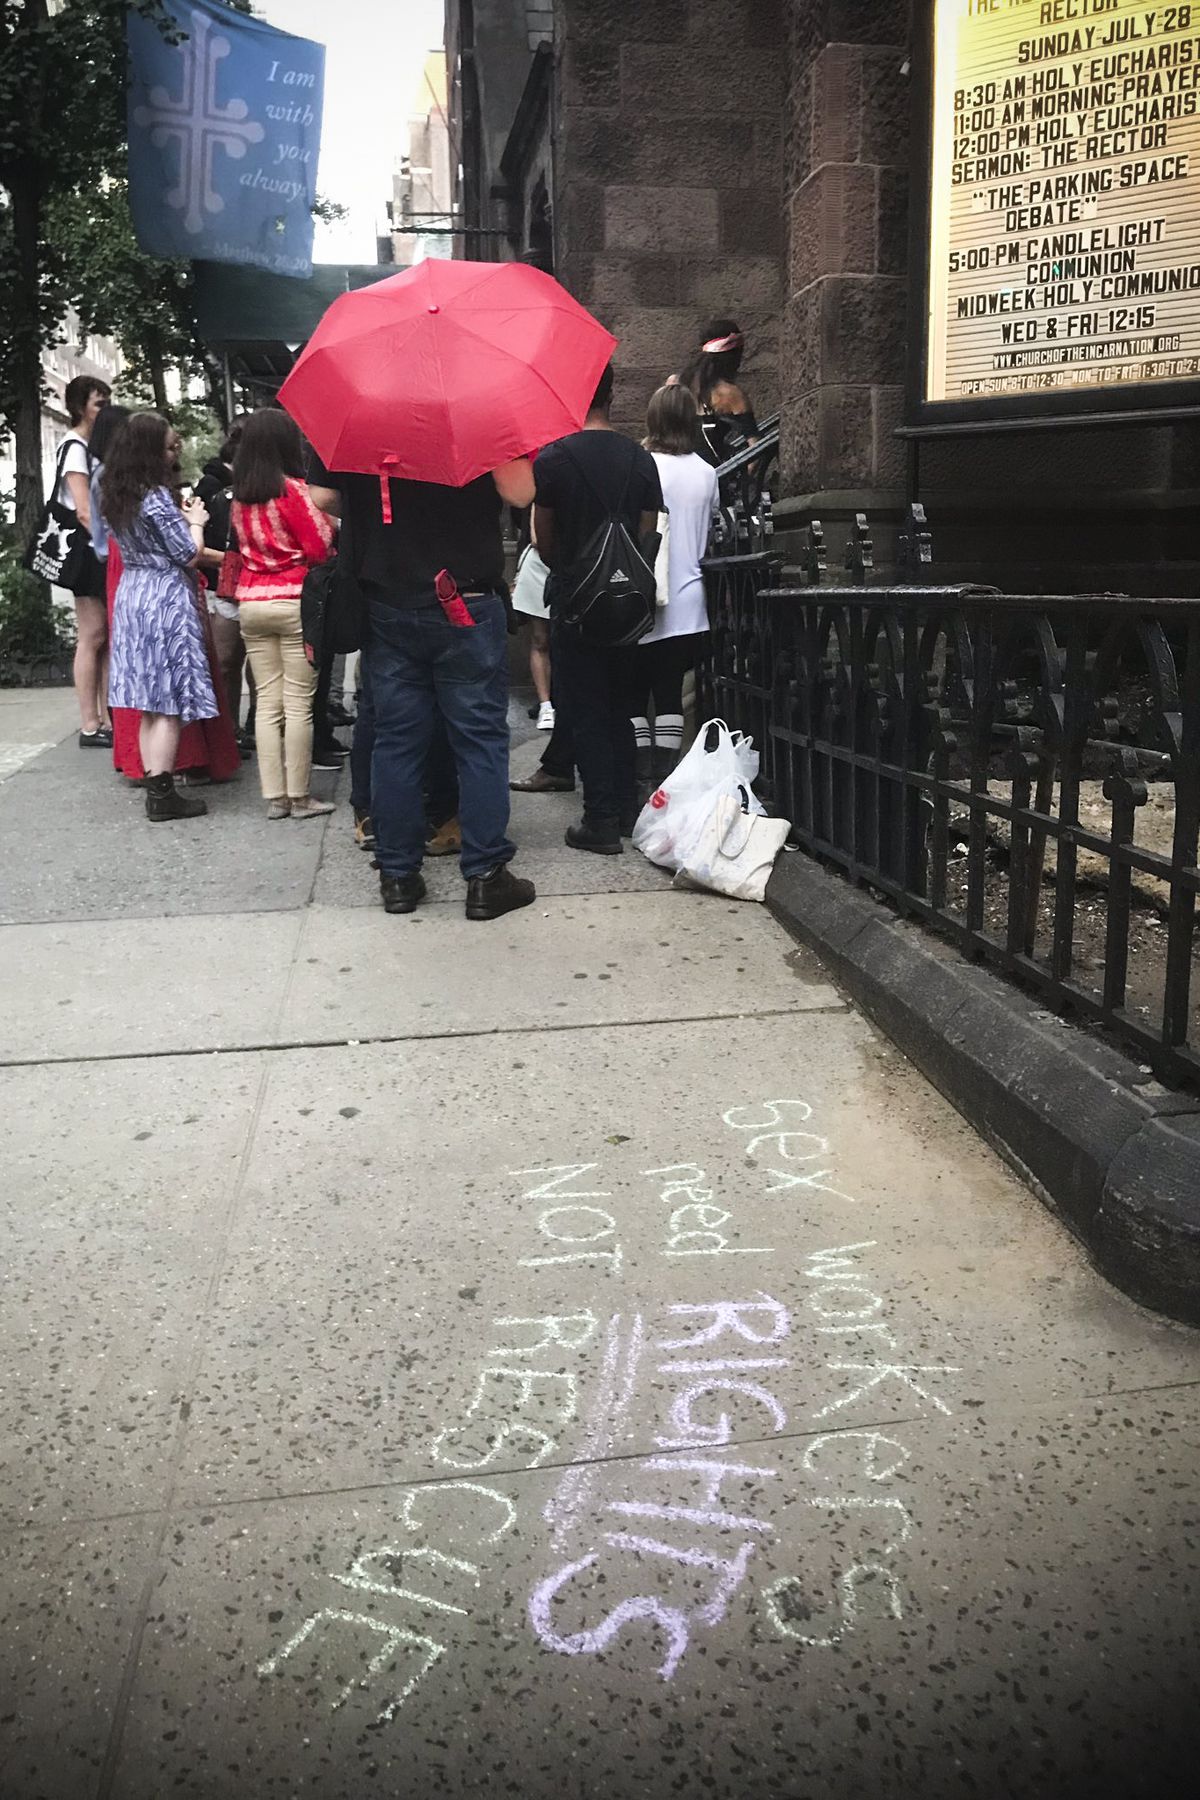 Sidewalk chalk in support of decriminalization of sex work in New York City.